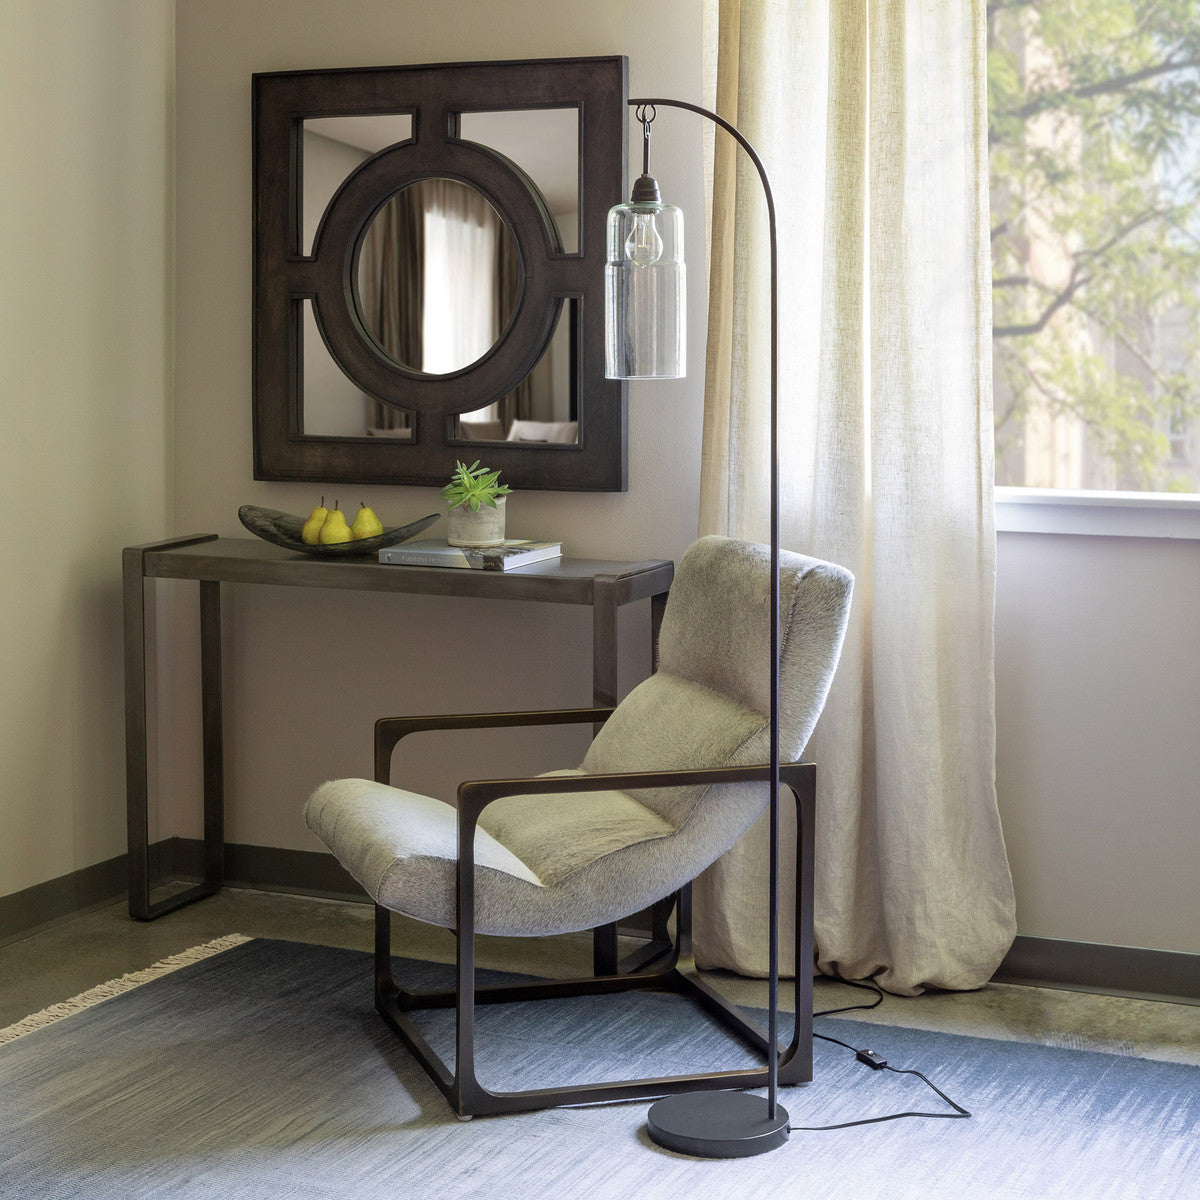 floor lamp near a window with a chair